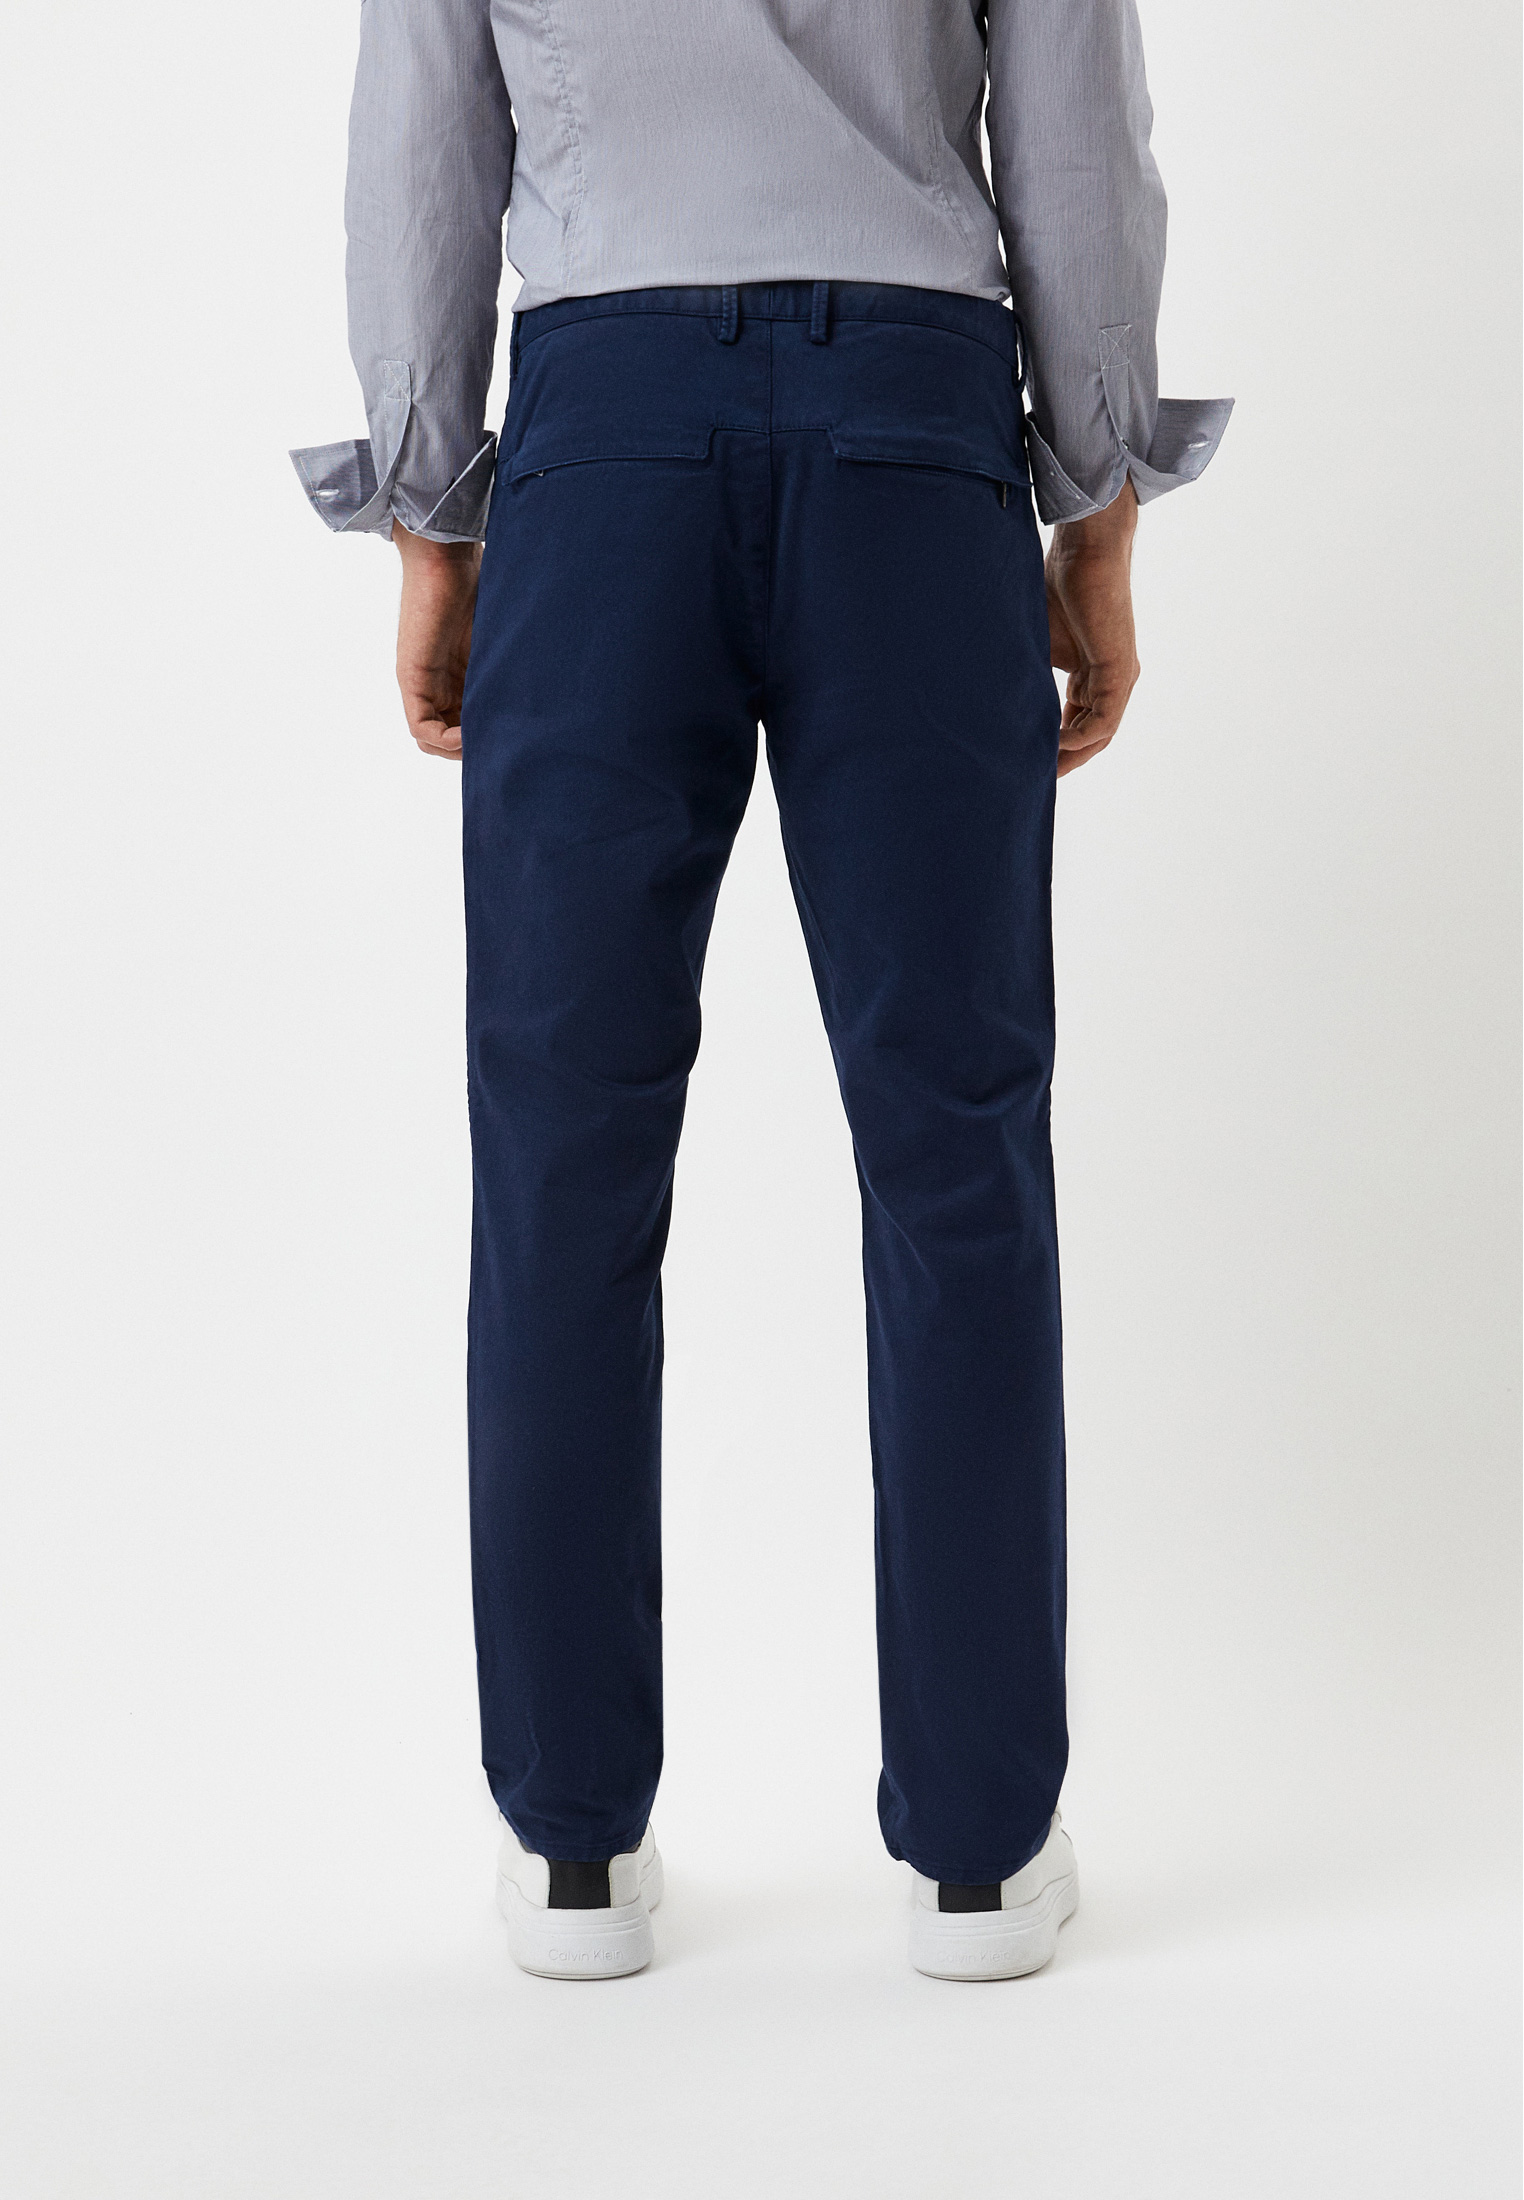 Мужские повседневные брюки Bikkembergs (Биккембергс) CP51BGJSB134: изображение 3